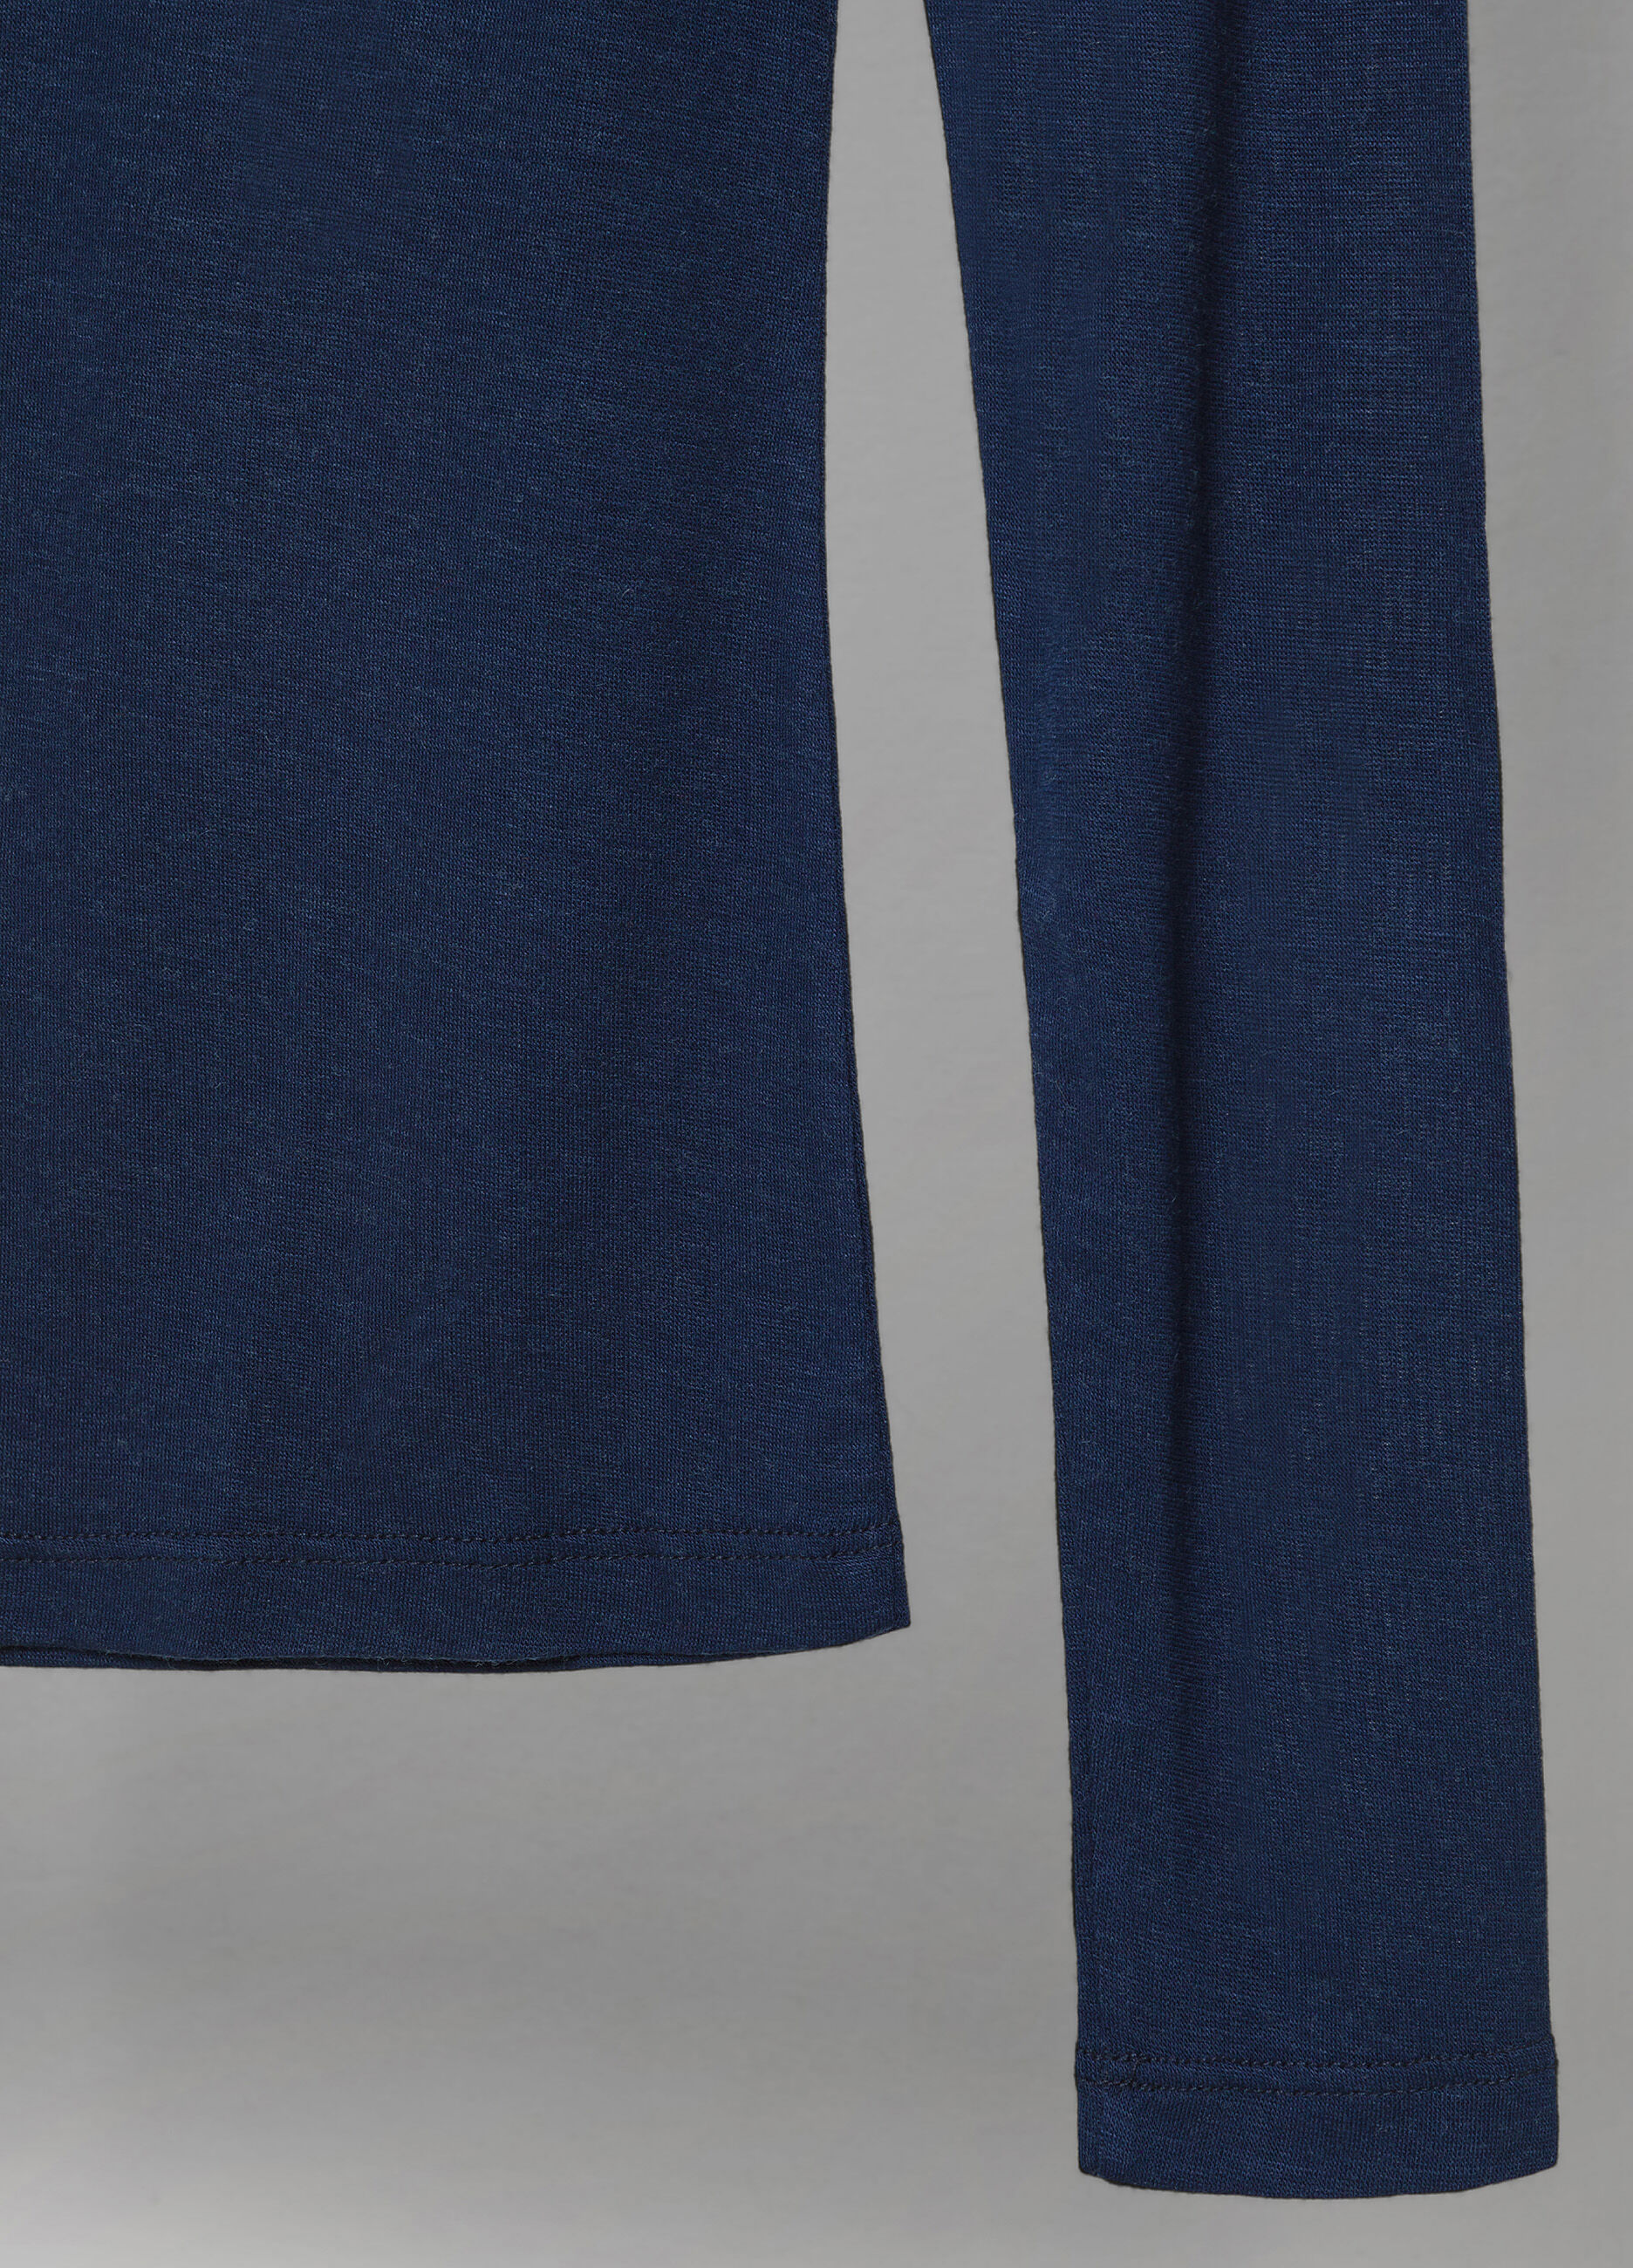 T-shirt à manches longues bleu marine en laine mélangée_6